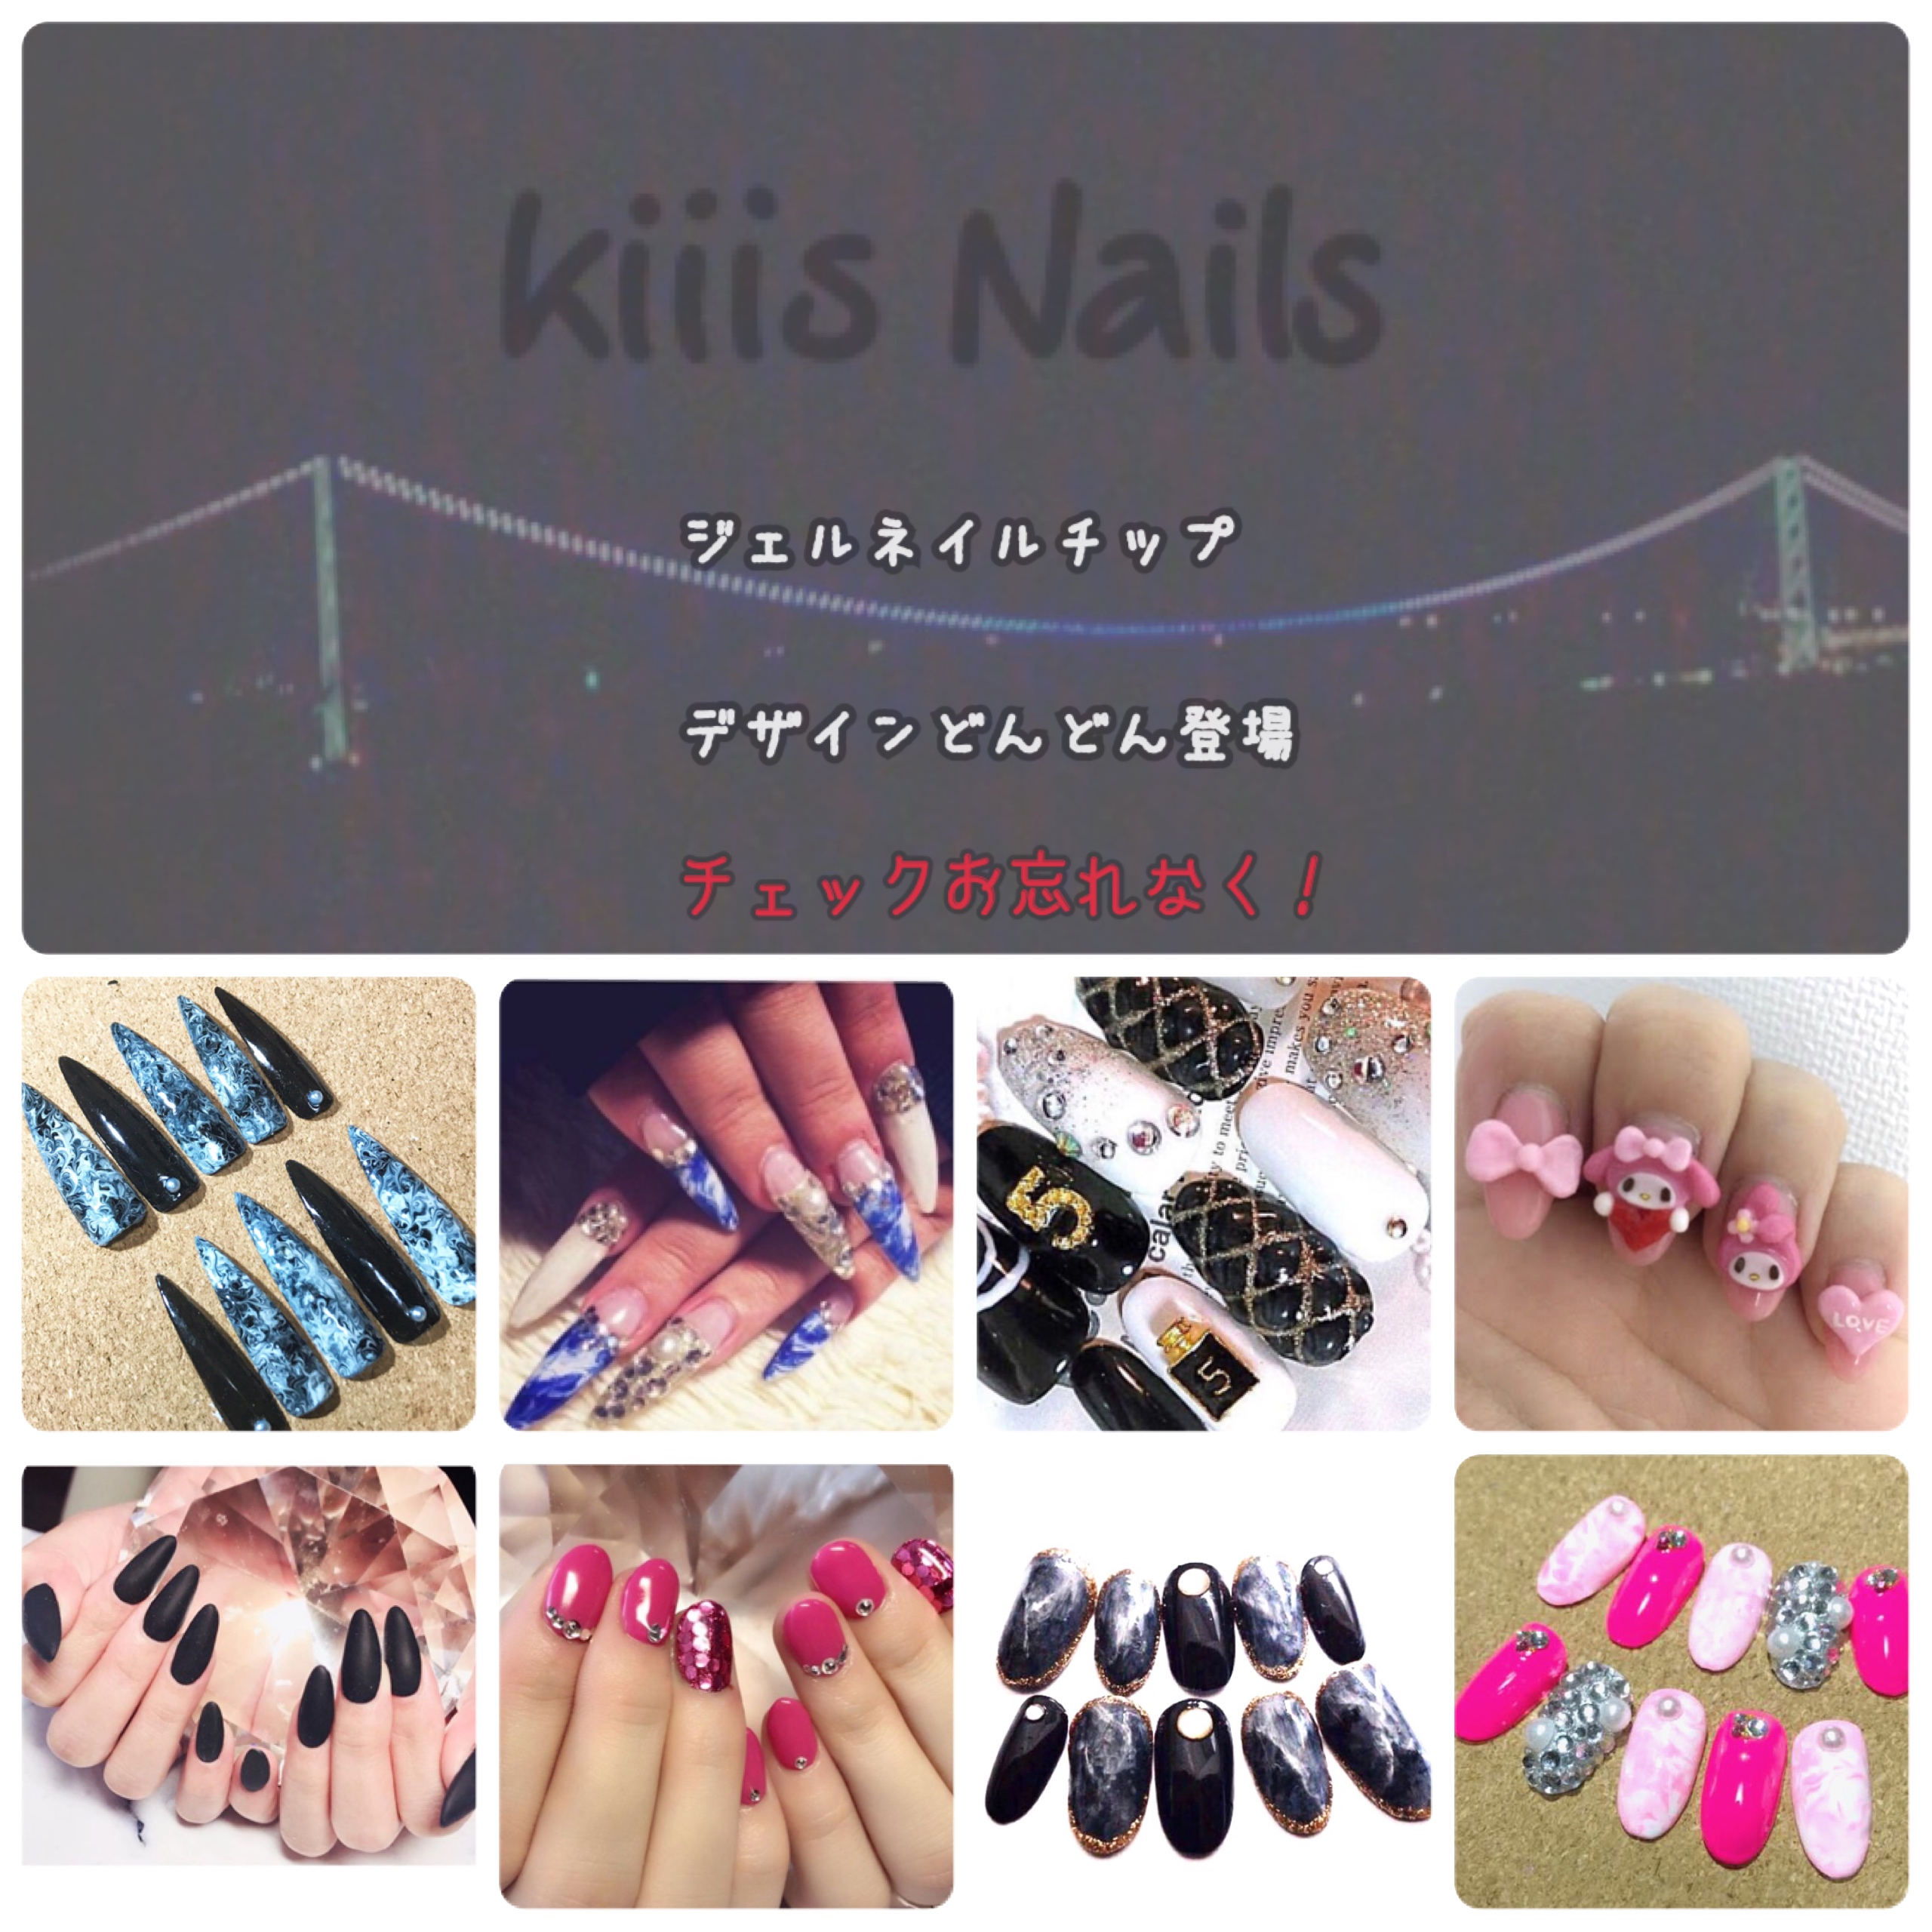 Kiiis Nails shop開設✩